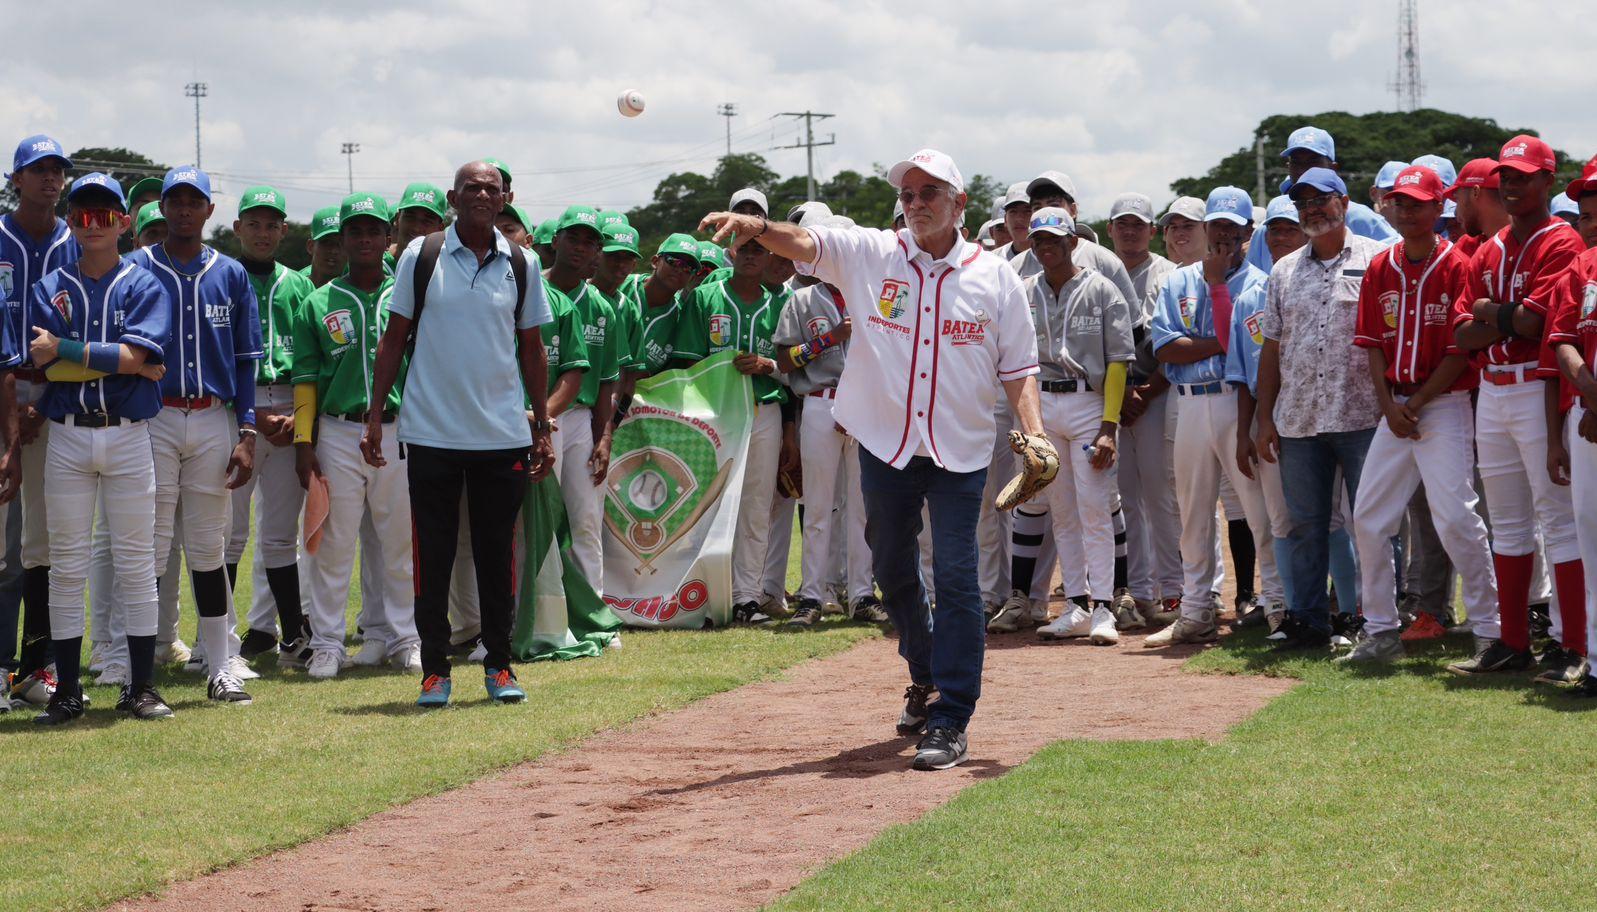 El gobernador del Atlántico, Eduardo Verano, realizó el lanzamiento de la primera bola del torneo.